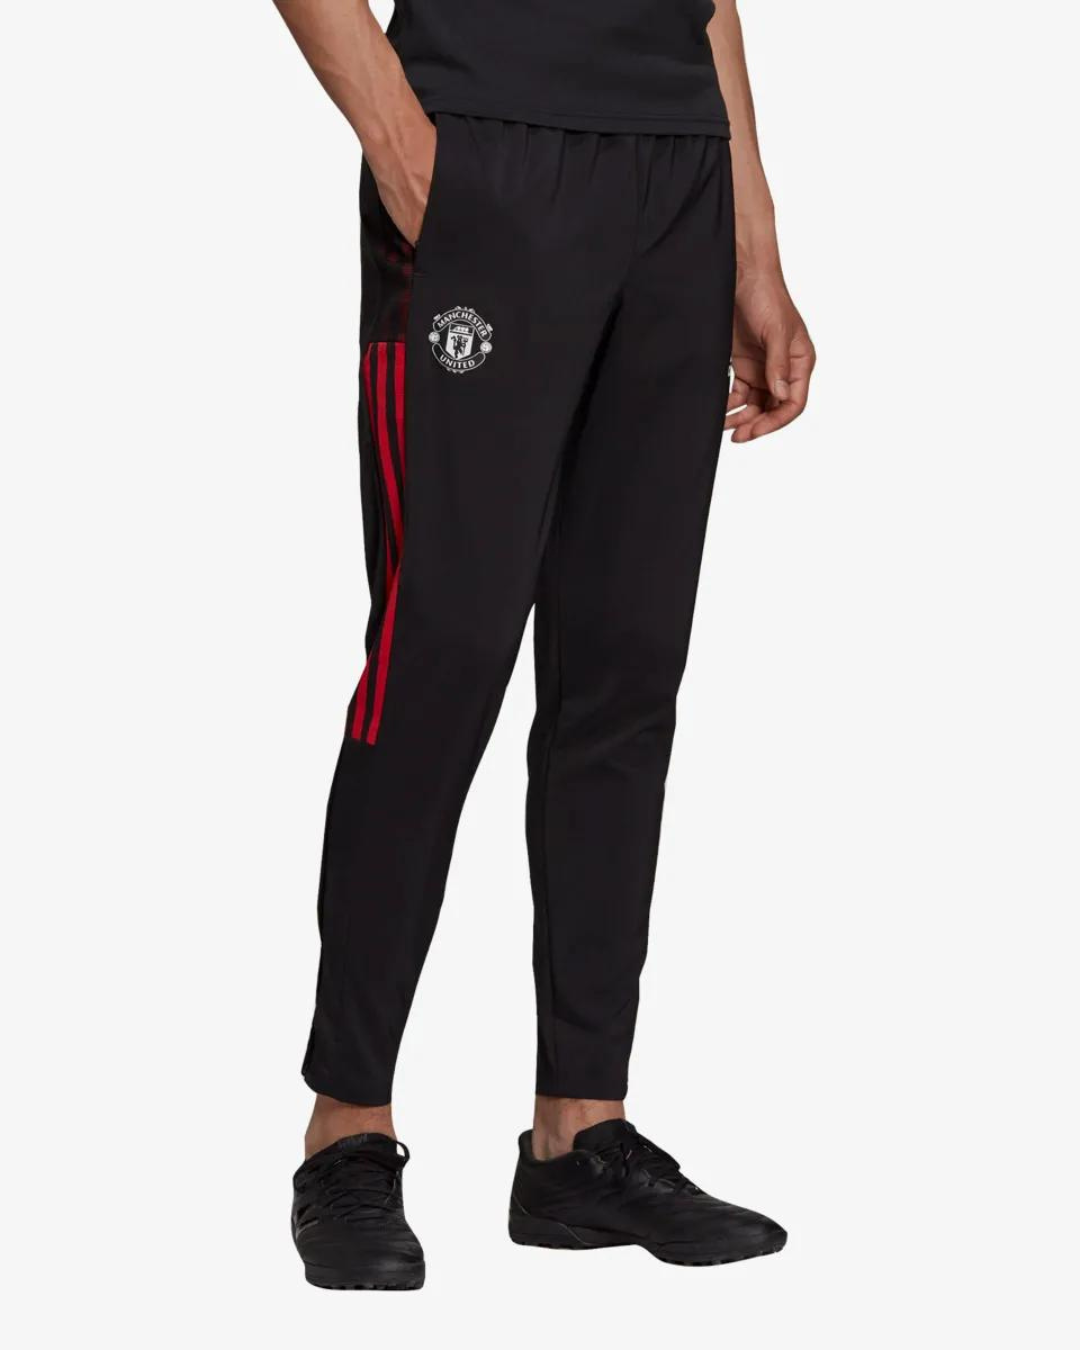 Pantalon de survêtement Manchester United 2021/2022 - Noir/Rouge